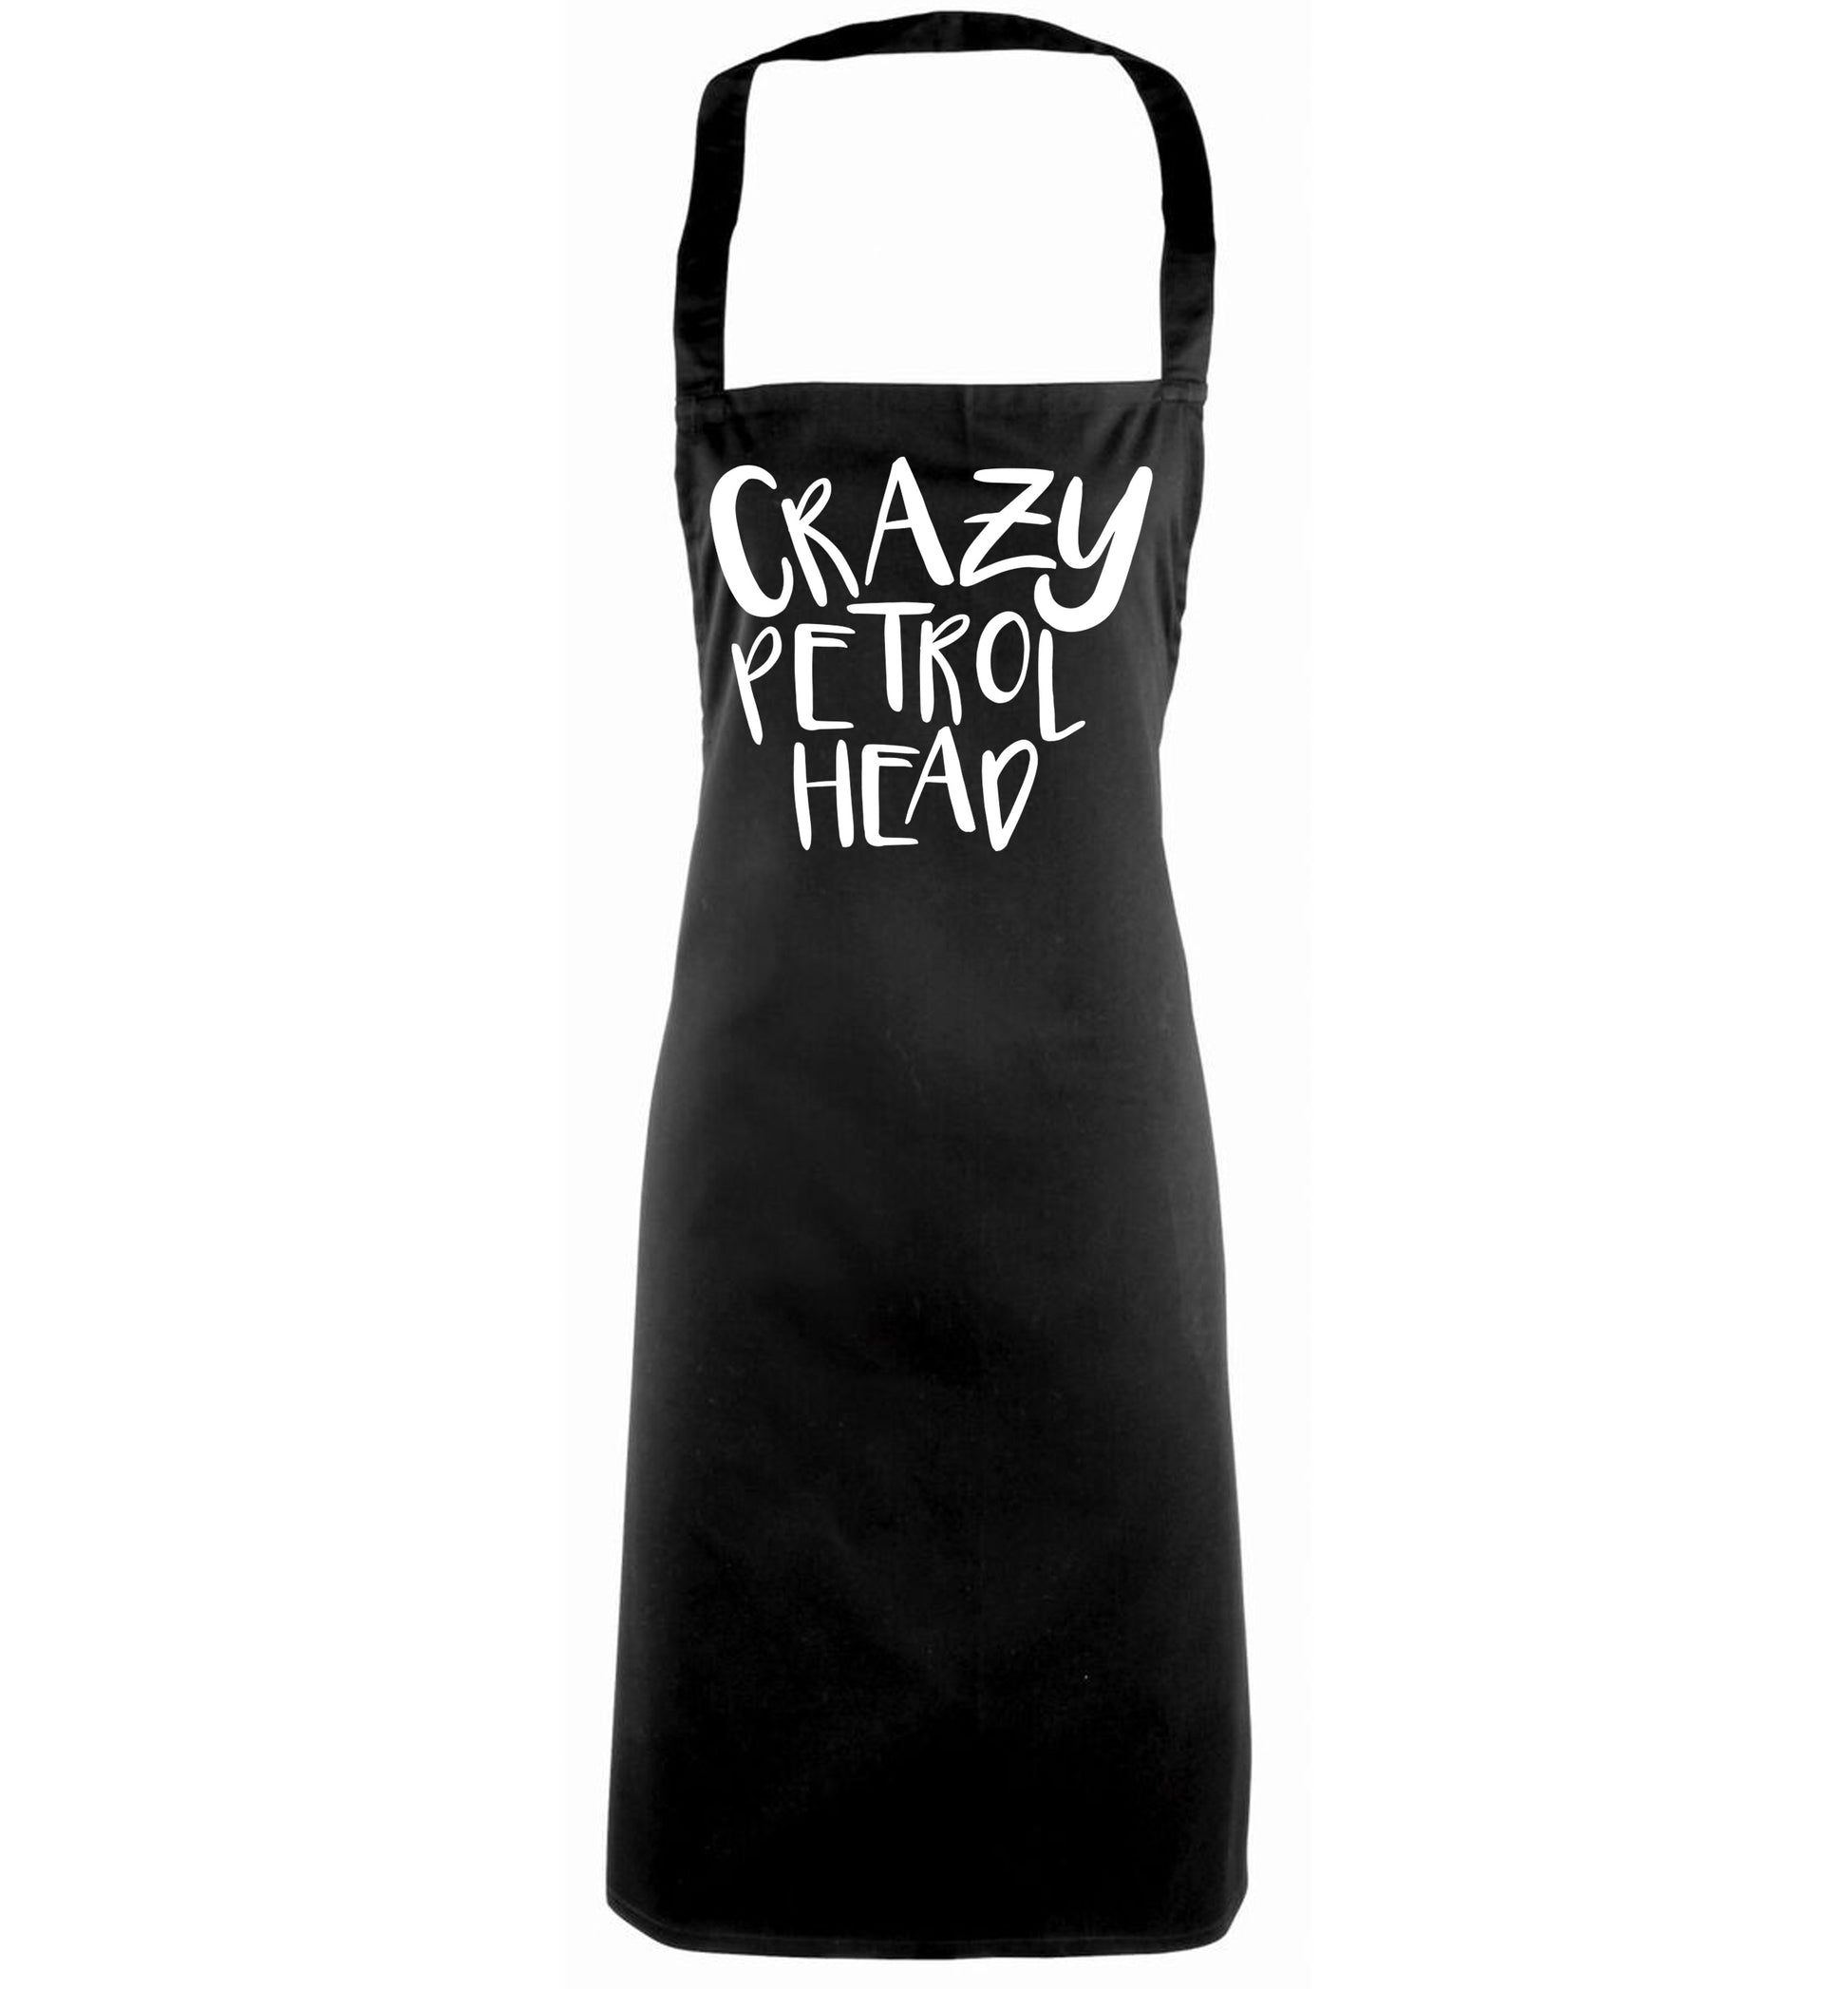 Crazy petrol head black apron